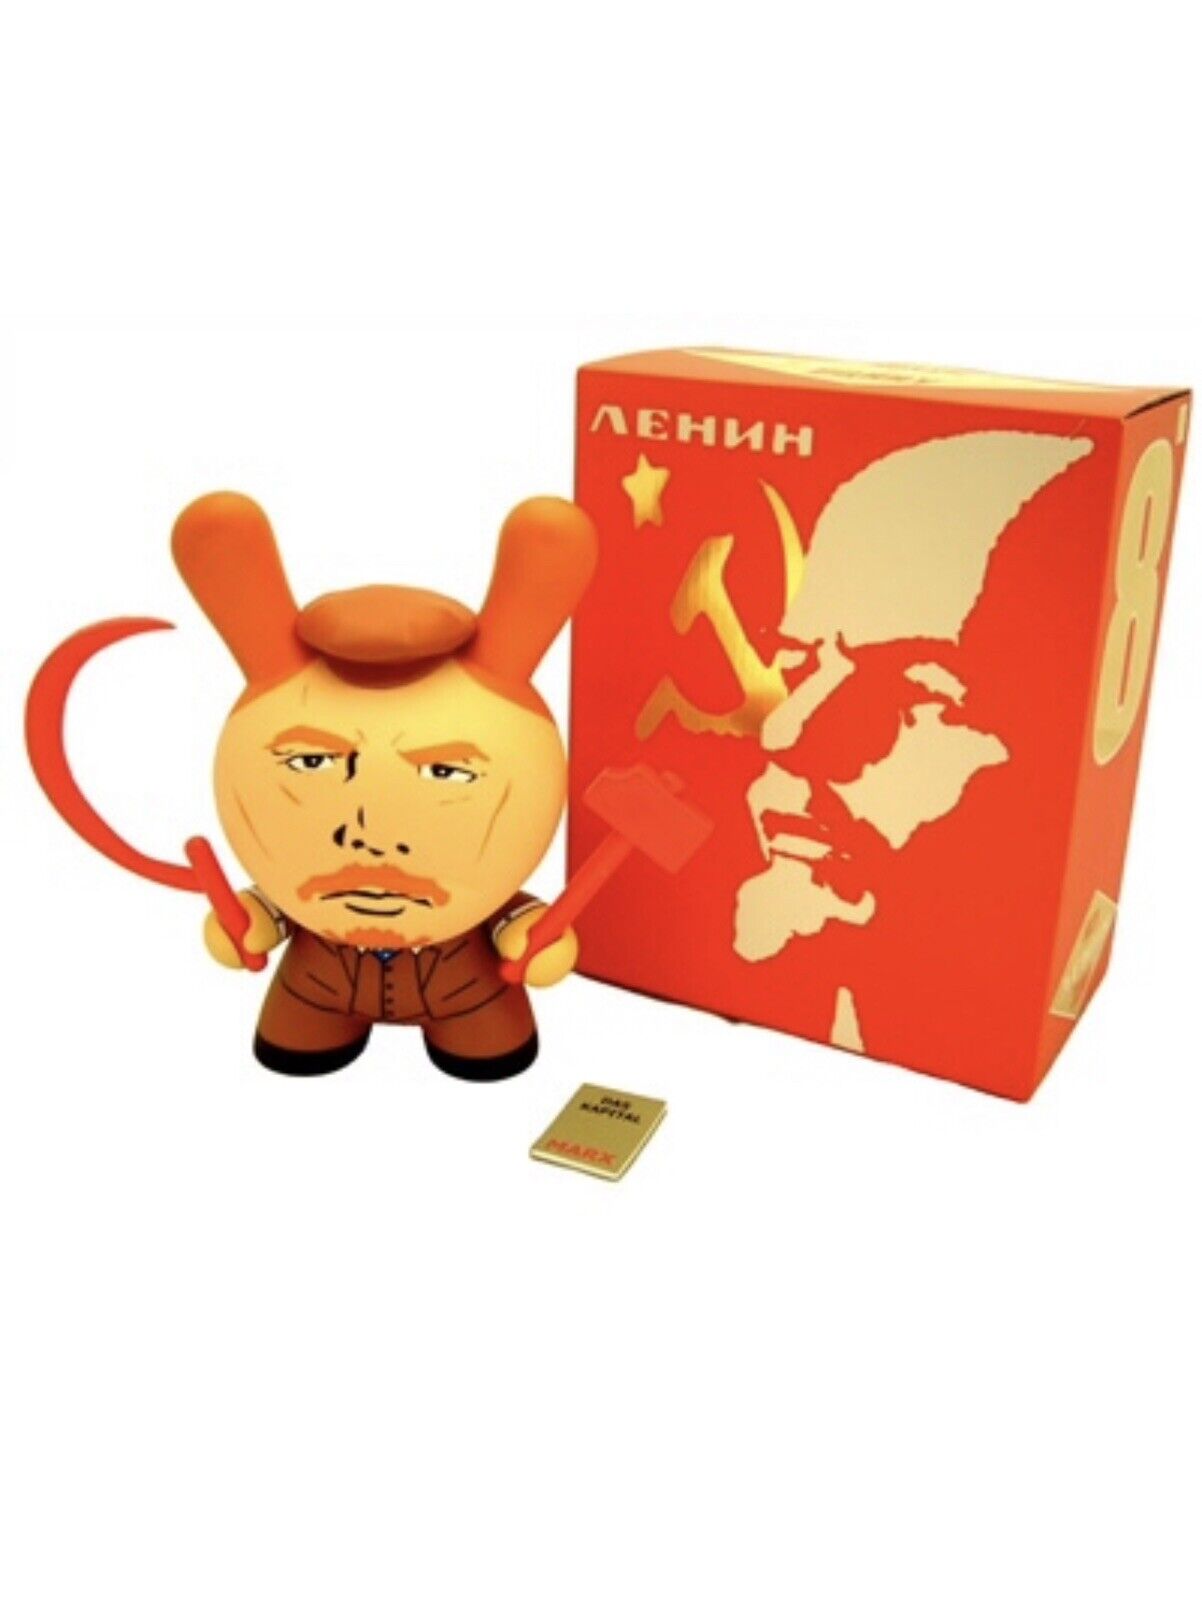 Kidrobot x Frank Kozik Lenin 8” Dunny Vinyl Figure in Box Brand New Sealed